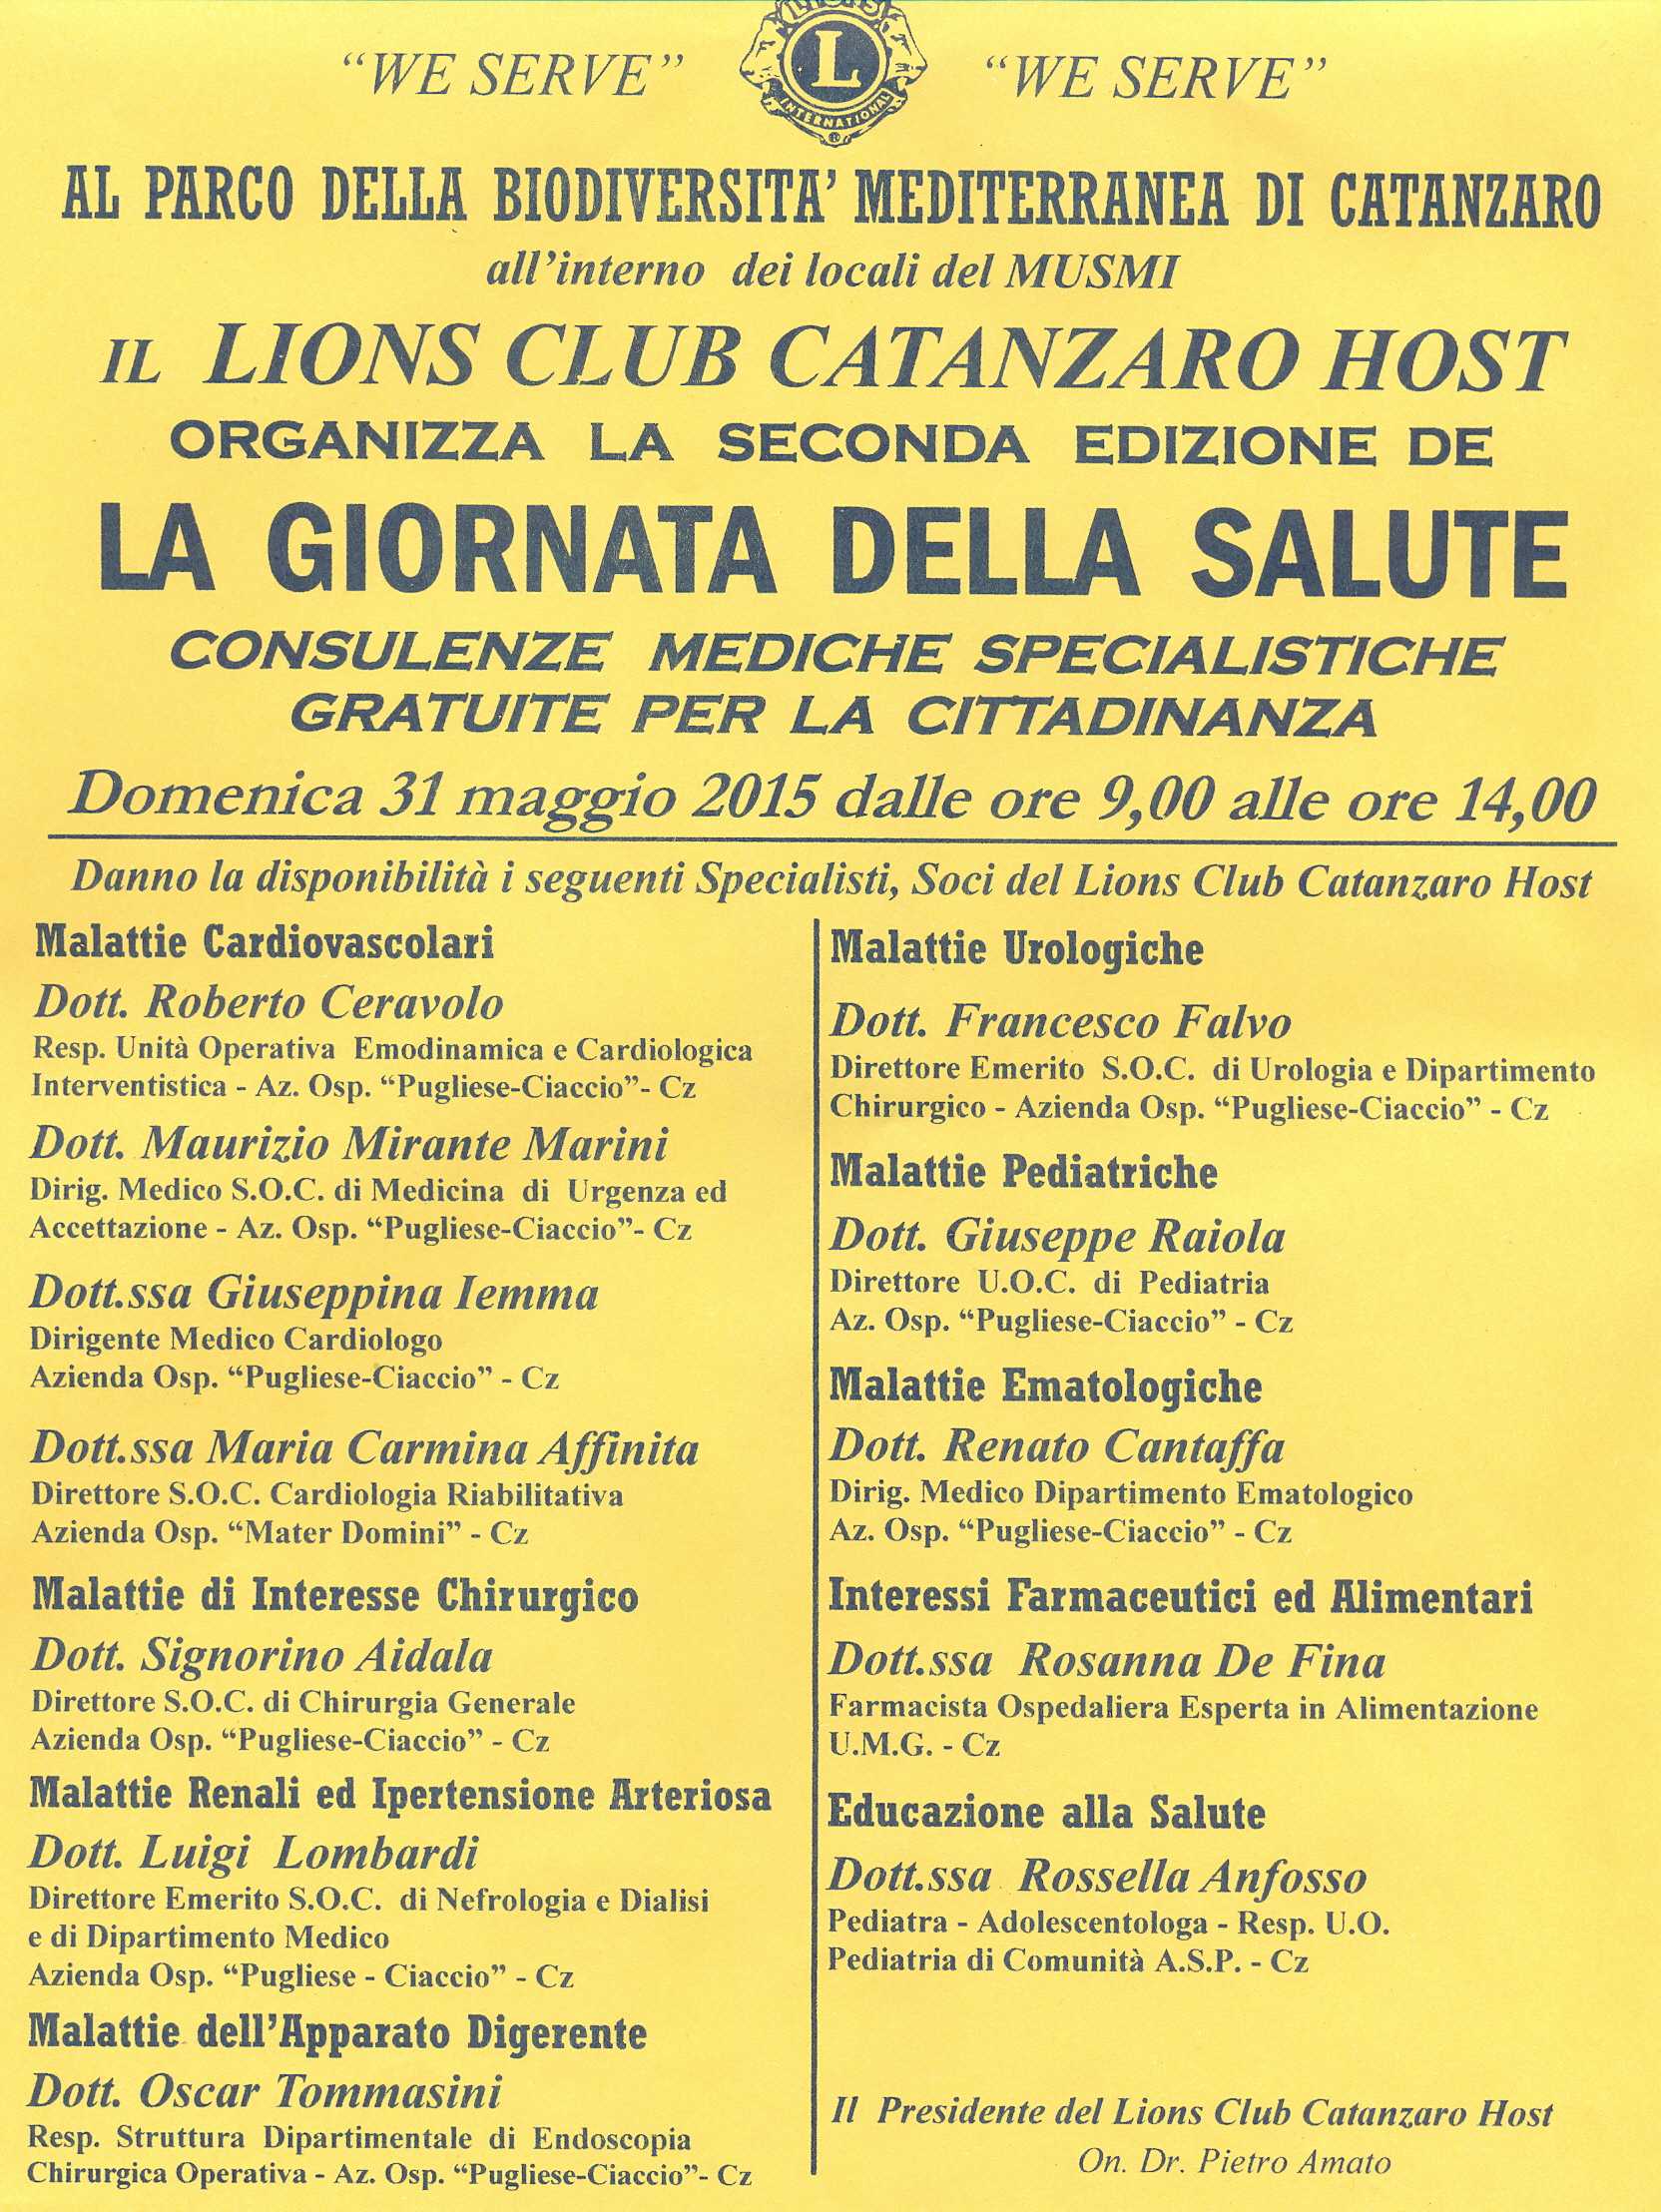 Giornata della Salute, l'impegno del Lions Club "Catanzaro Host" per i cittadini